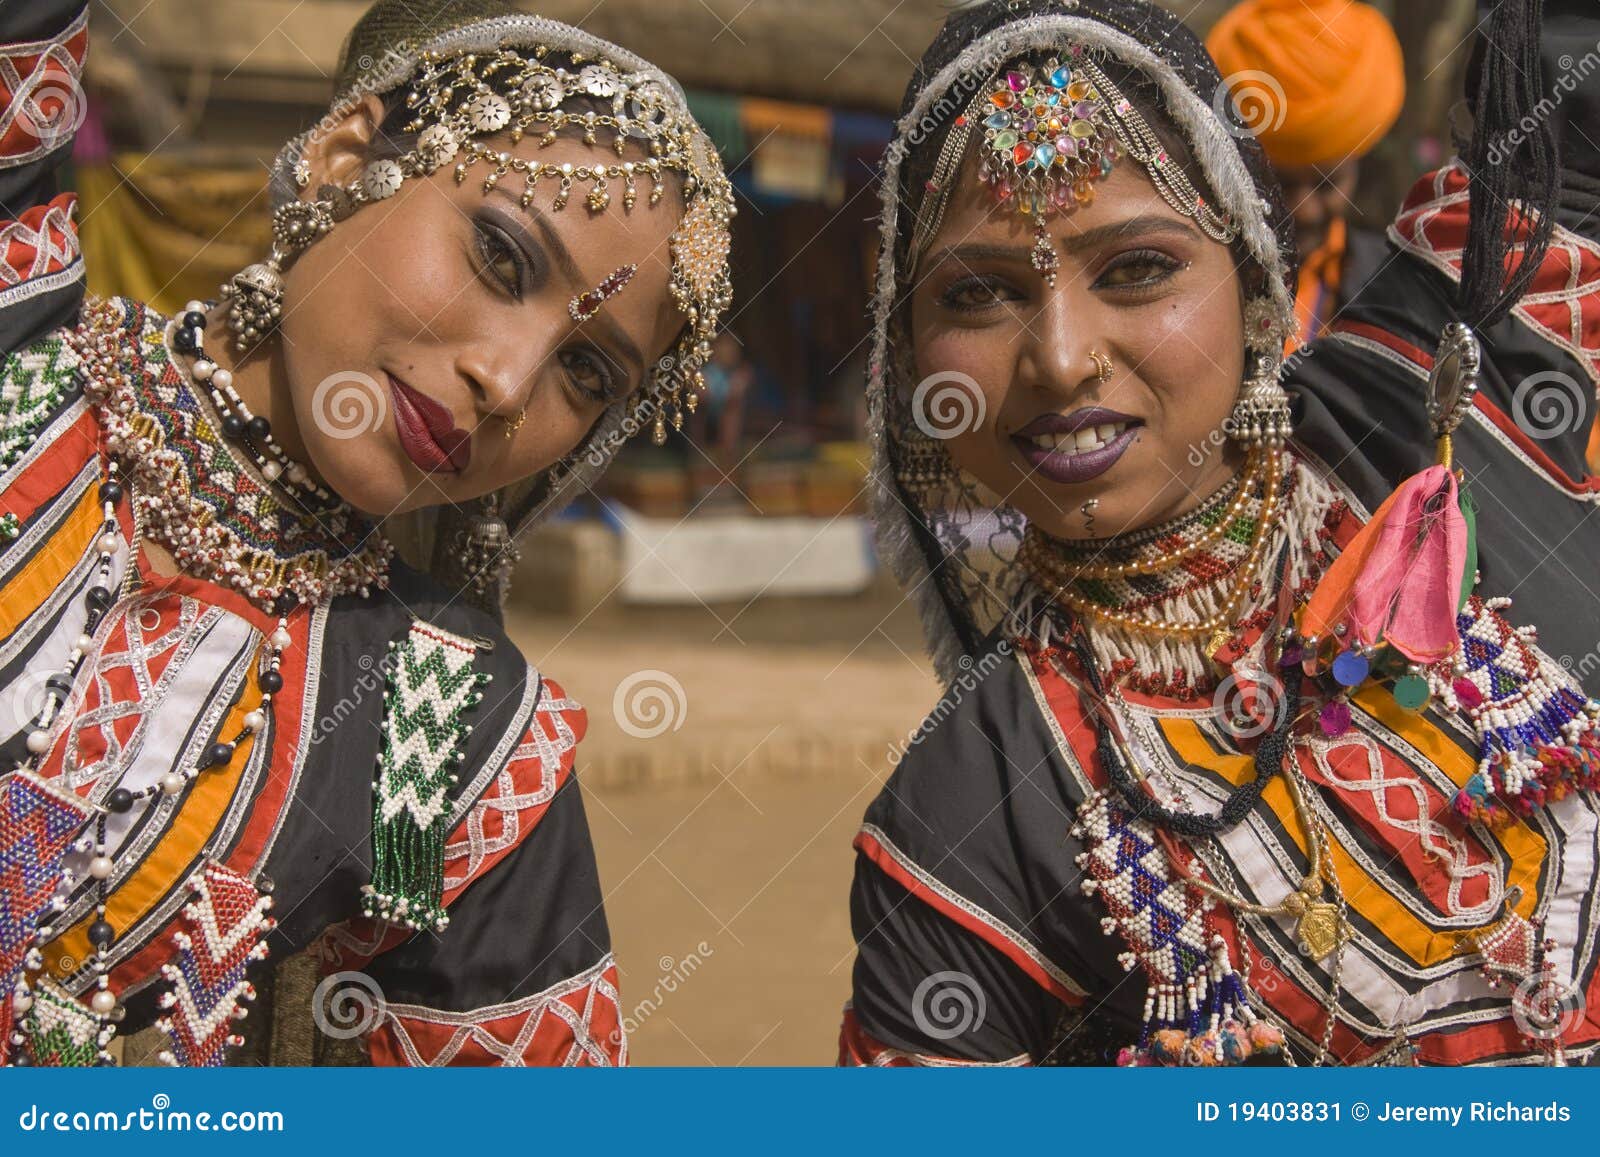 Kalbelia Dancers of Rajasthan Editorial Photo - Image of asian, person ...